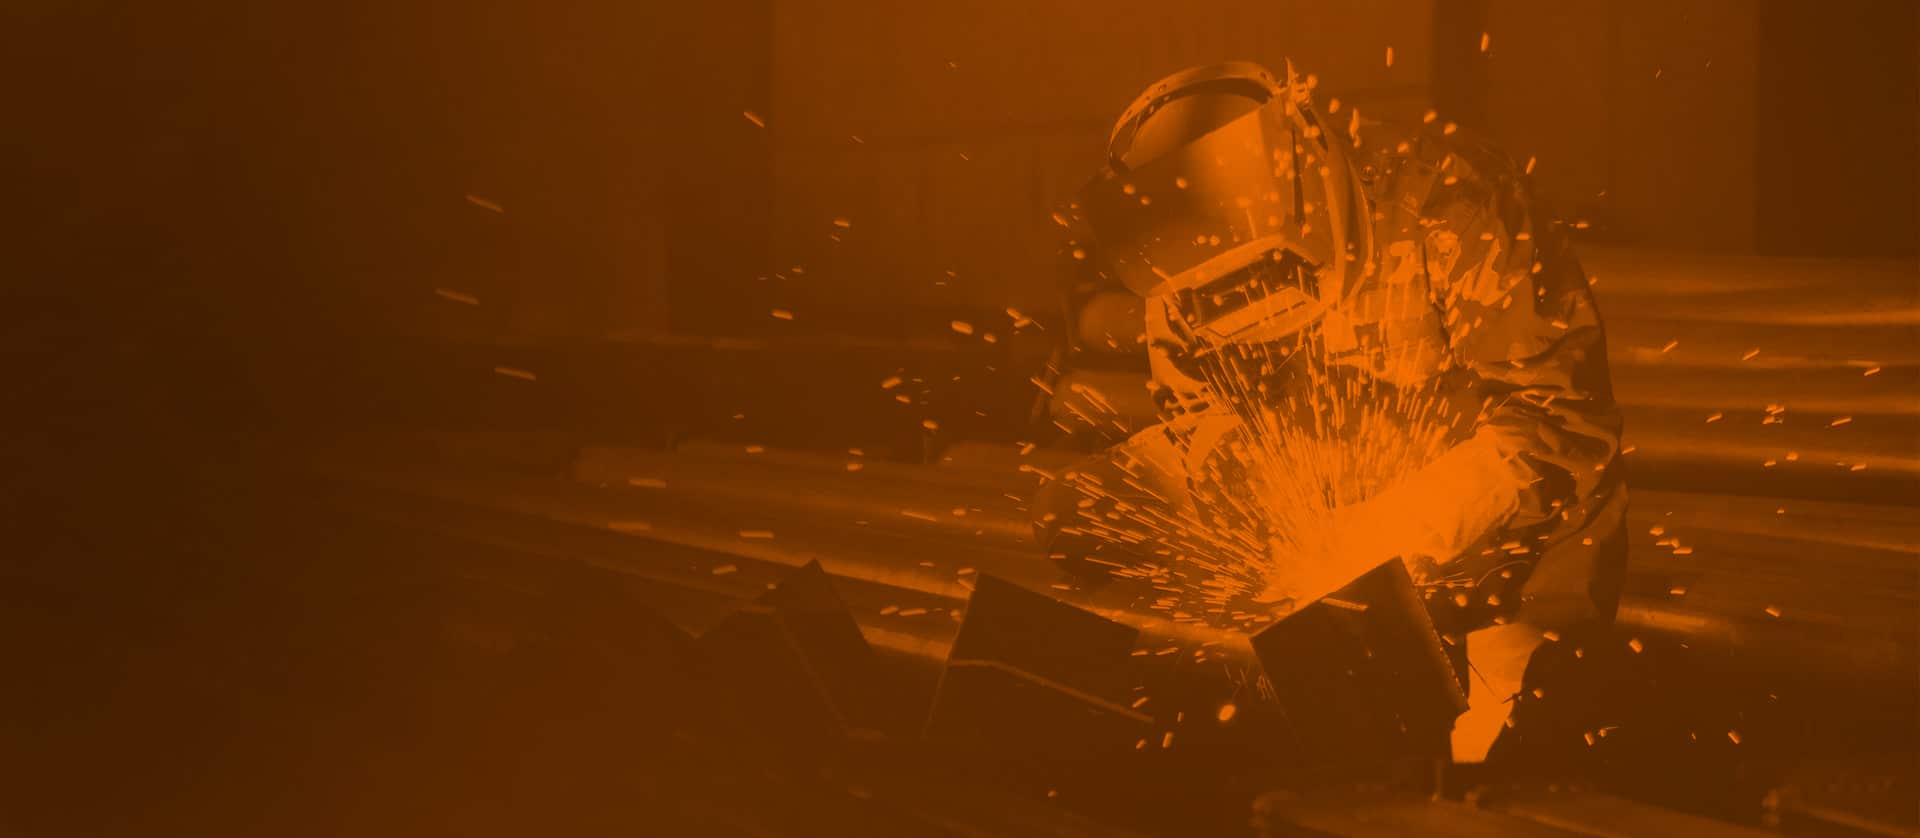 industrial welder welding metal profiles